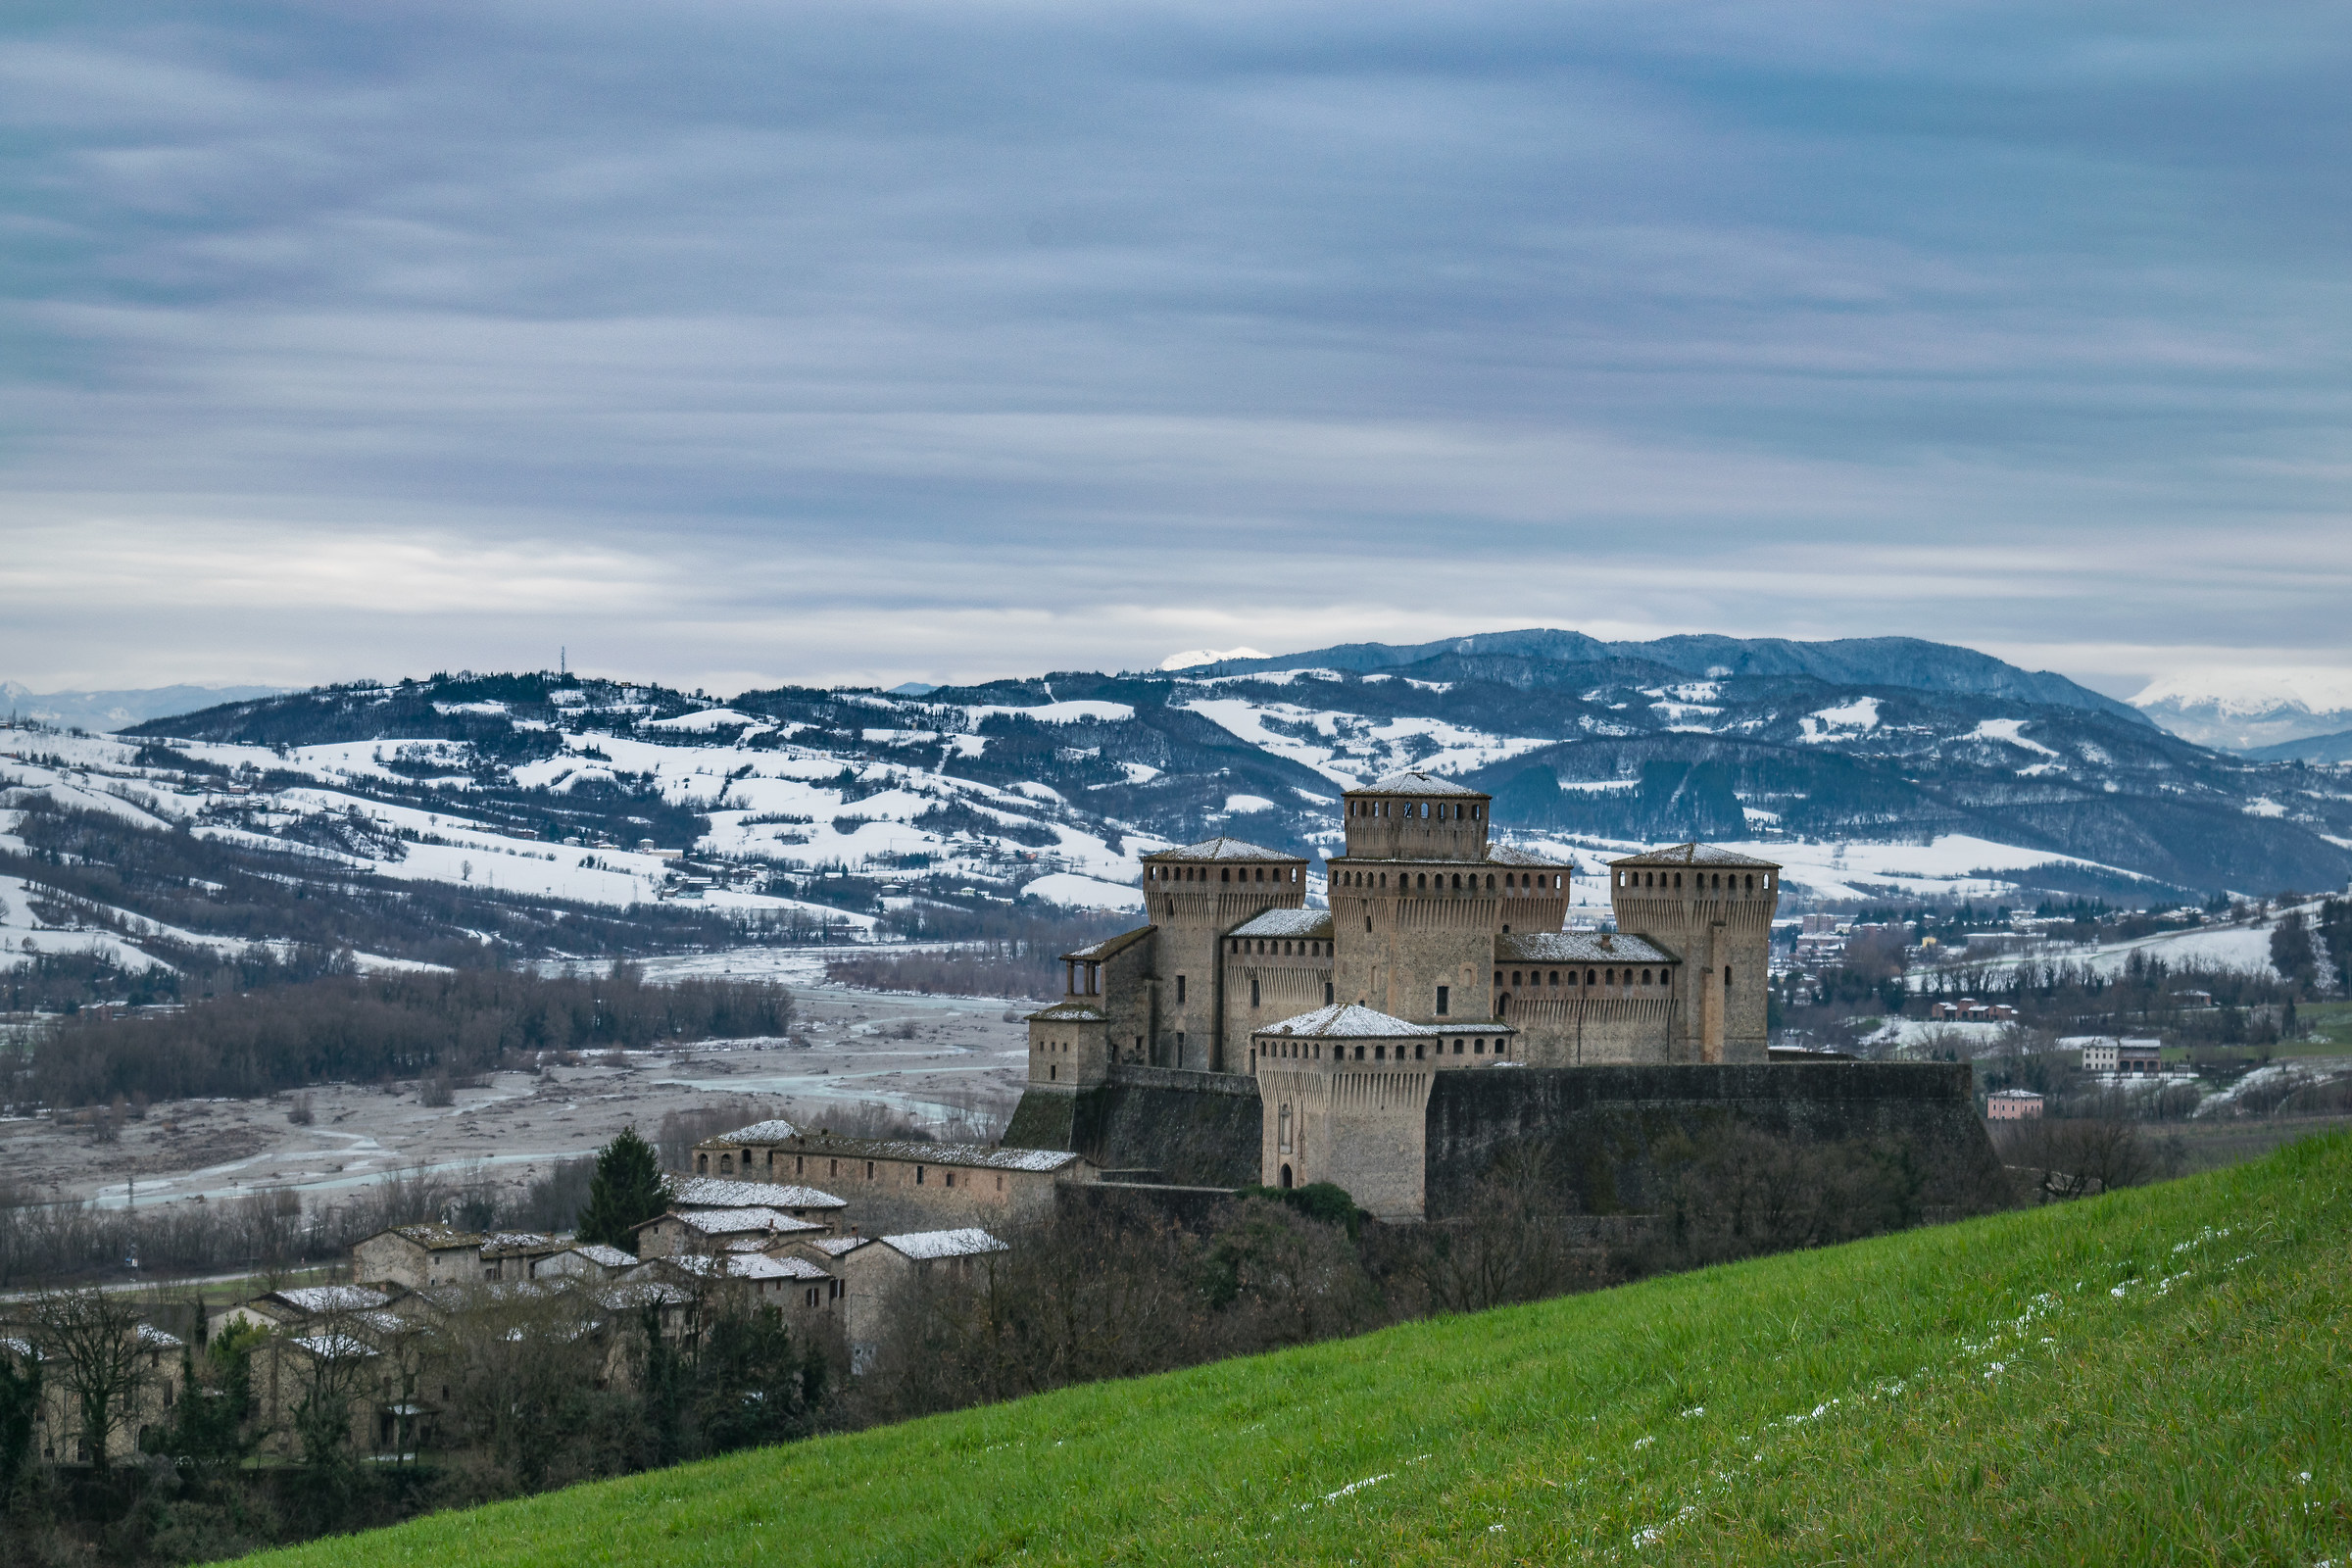 Castello di Torrechiara...